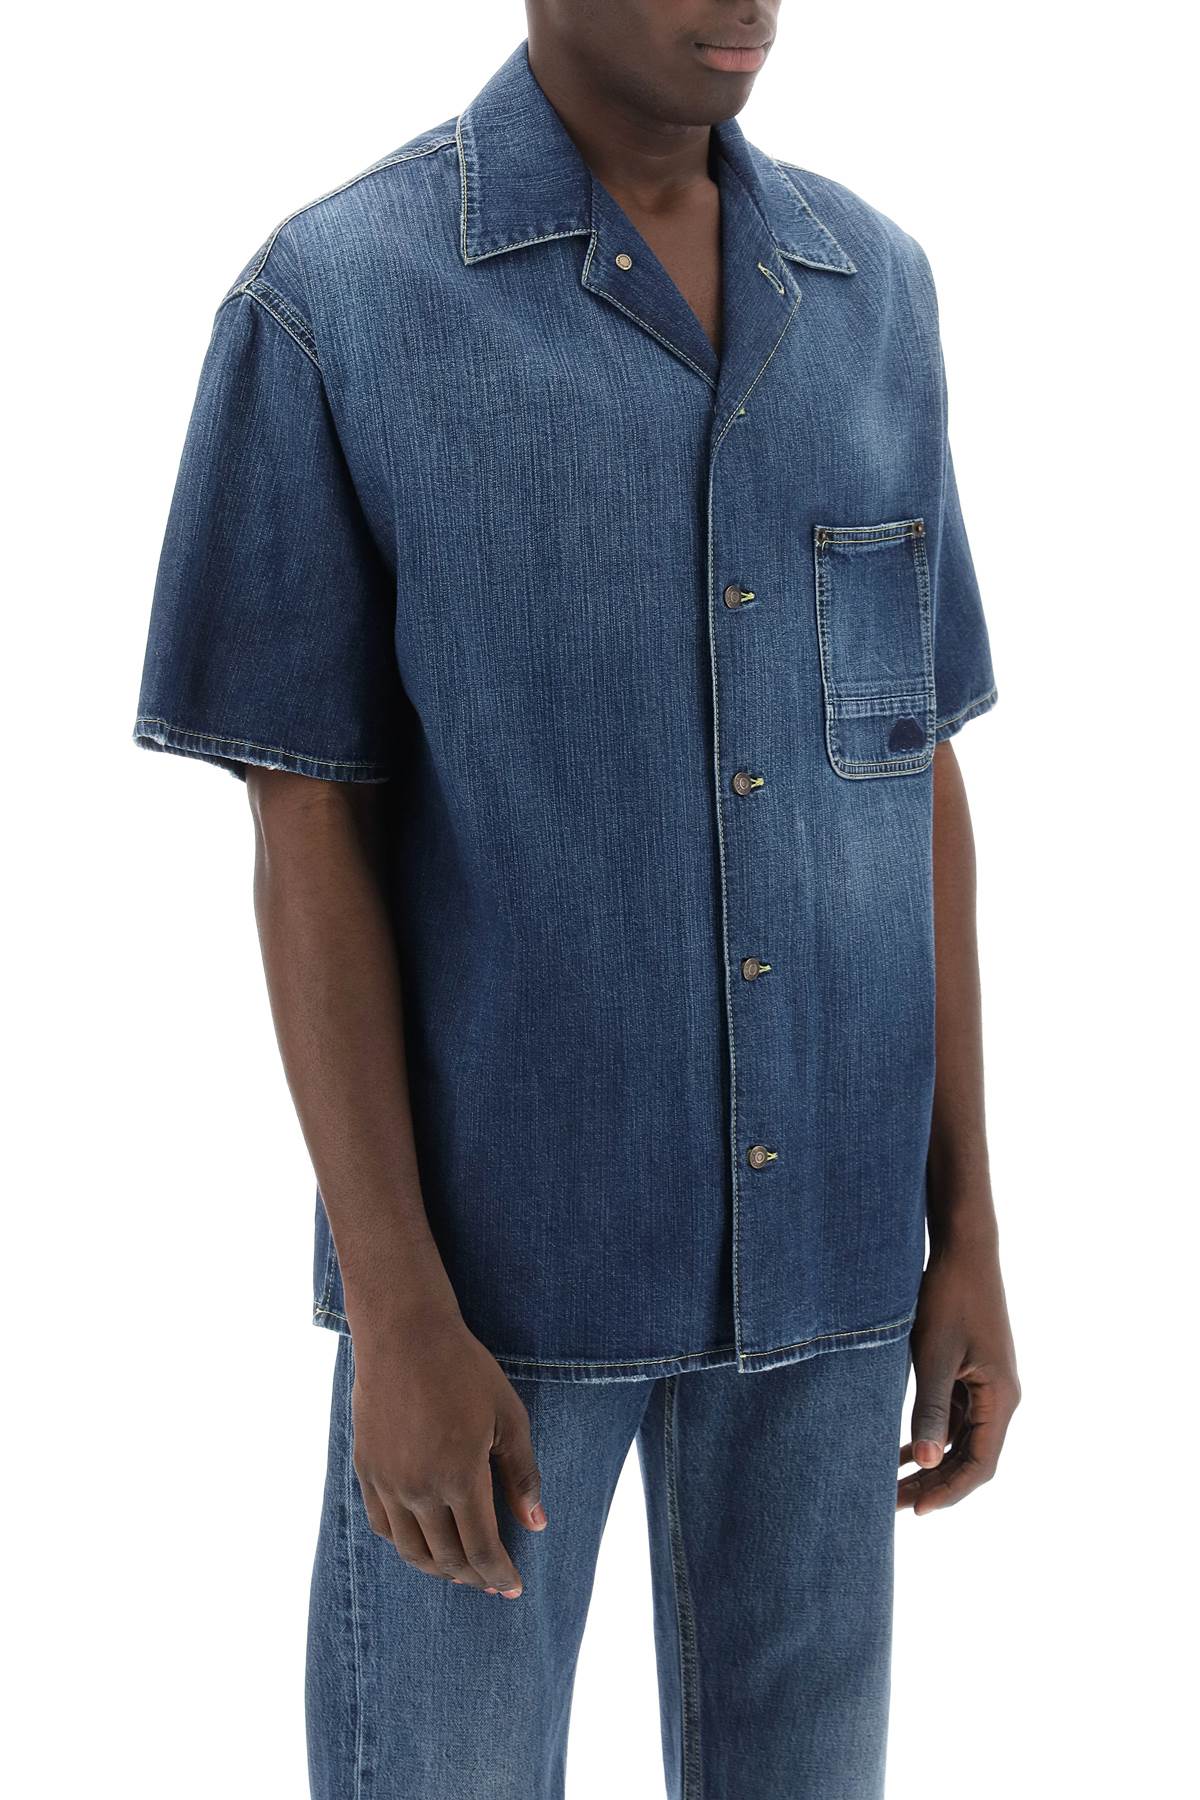 قميص كاجوال قصير الأكمام من الدينيم العضوي للرجال باللون الأزرق الداكن